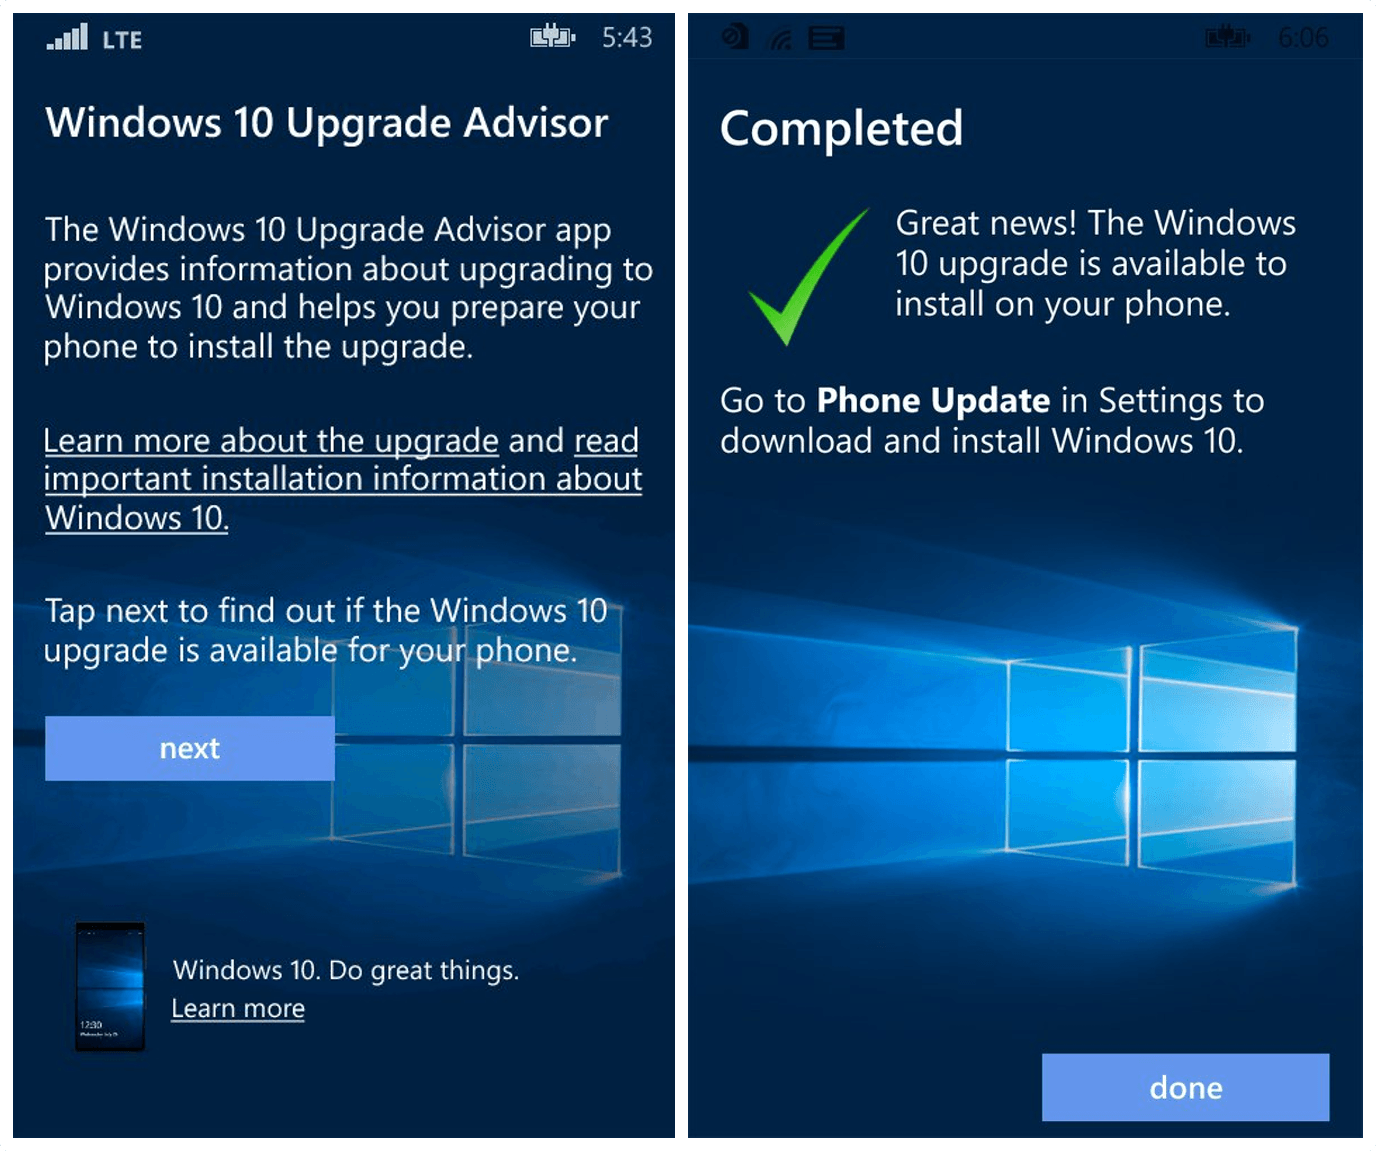 UpdateAdvisor o aplicativo Supervisor de Atualização do Windows 10 Mobile ajuda você a descobrir se seu telefone Windows Phone 8.1